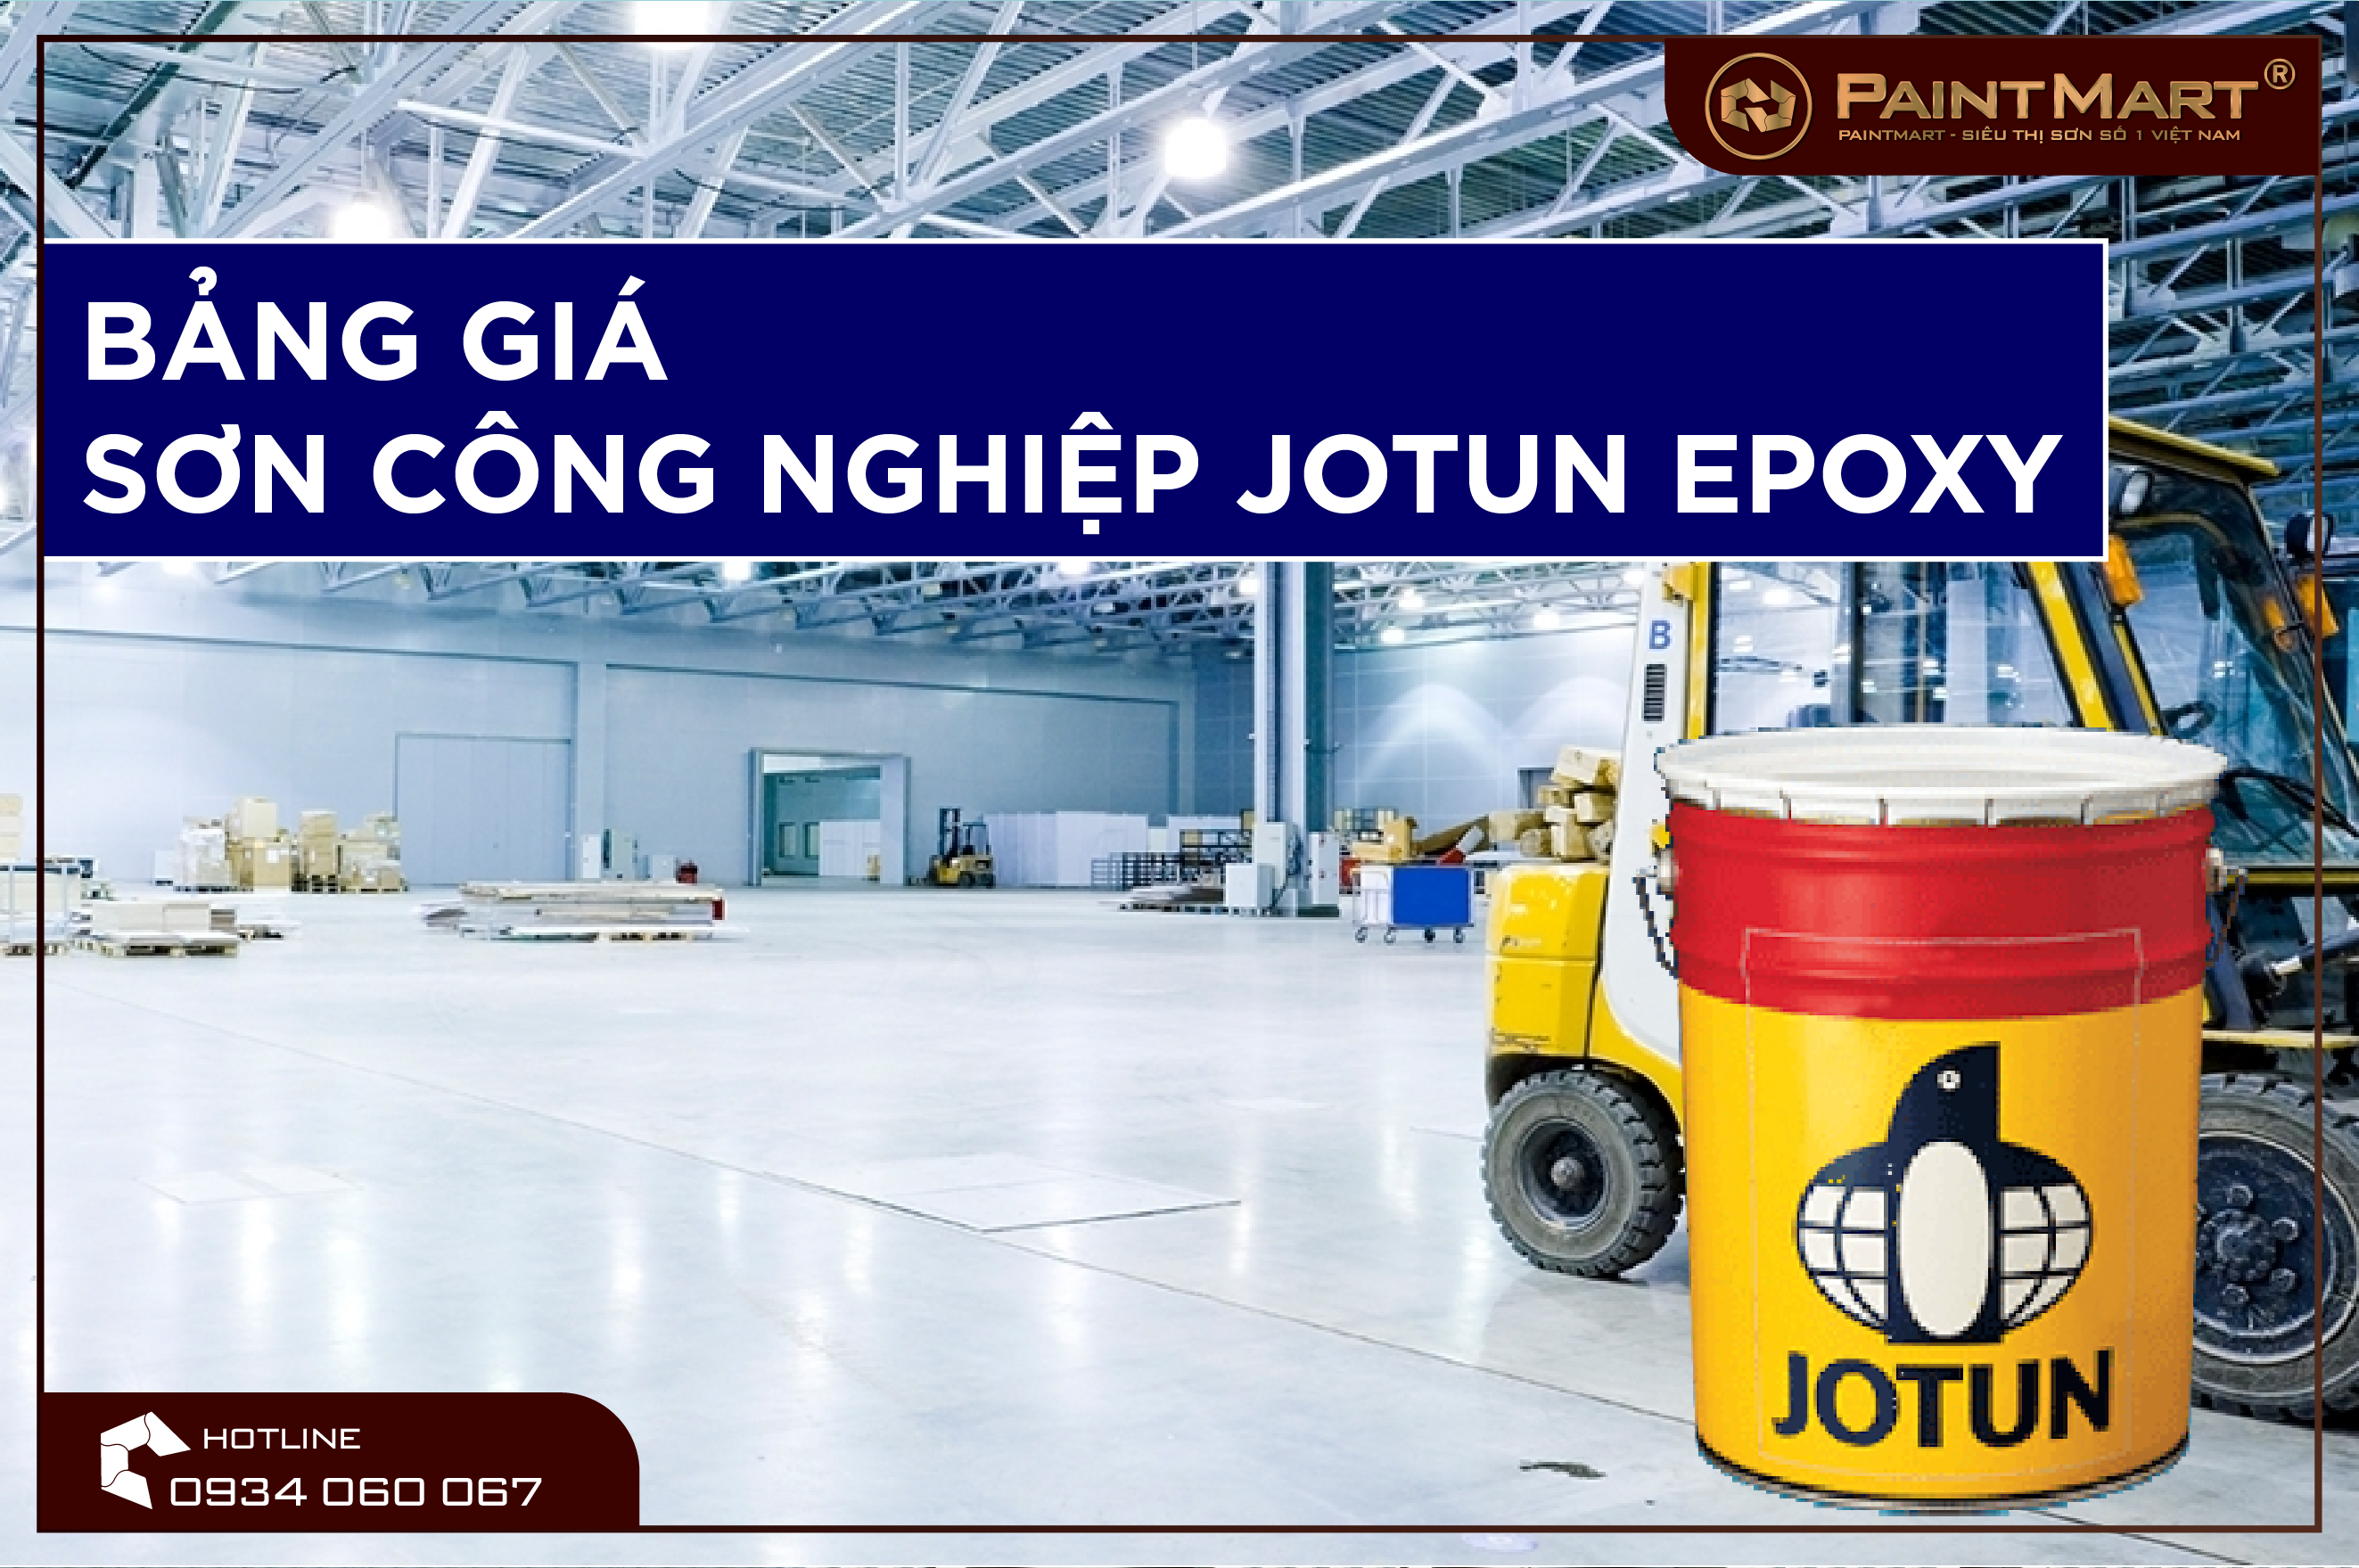 Sơn công nghiệp Jotun Epoxy: Sơn công nghiệp Jotun Epoxy là sự lựa chọn hoàn hảo cho các công trình công nghiệp. Hãy đến với hình ảnh để xem những dự án đã sử dụng sơn Jotun Epoxy và cảm nhận sự khác biệt.